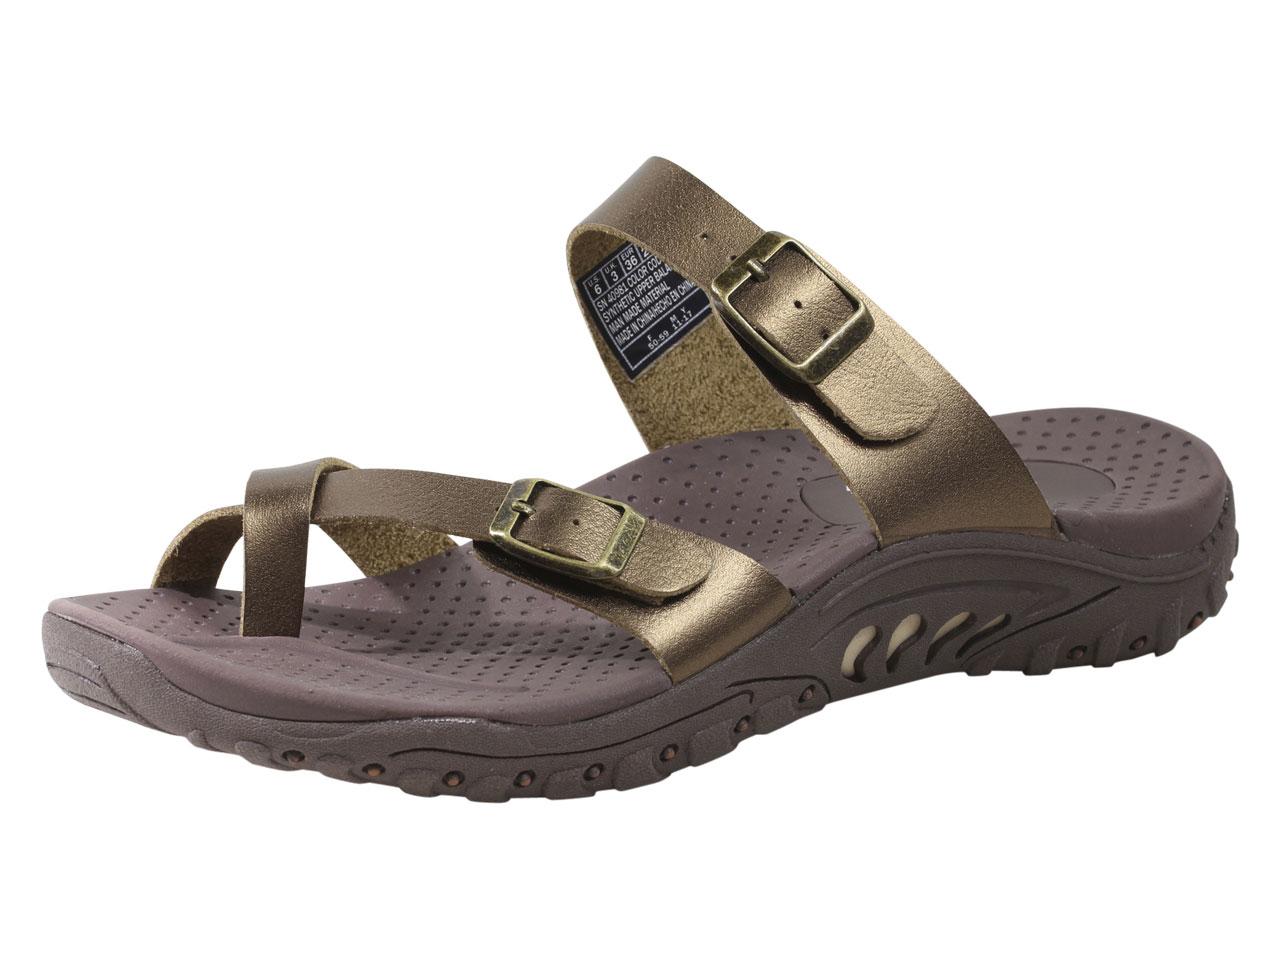 skechers sandals 2015